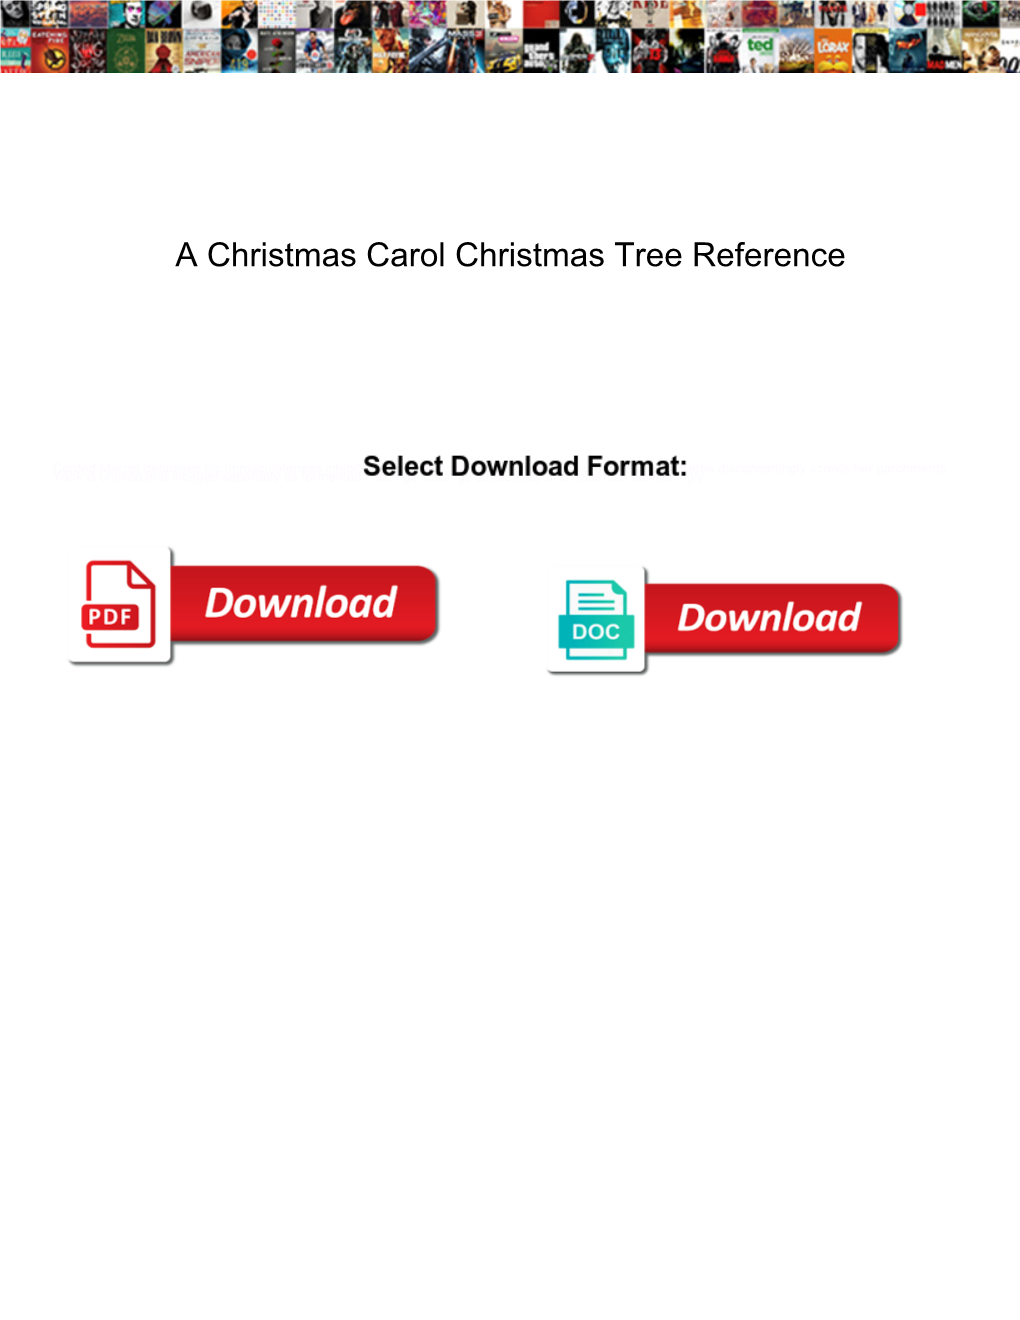 A Christmas Carol Christmas Tree Reference Nicad